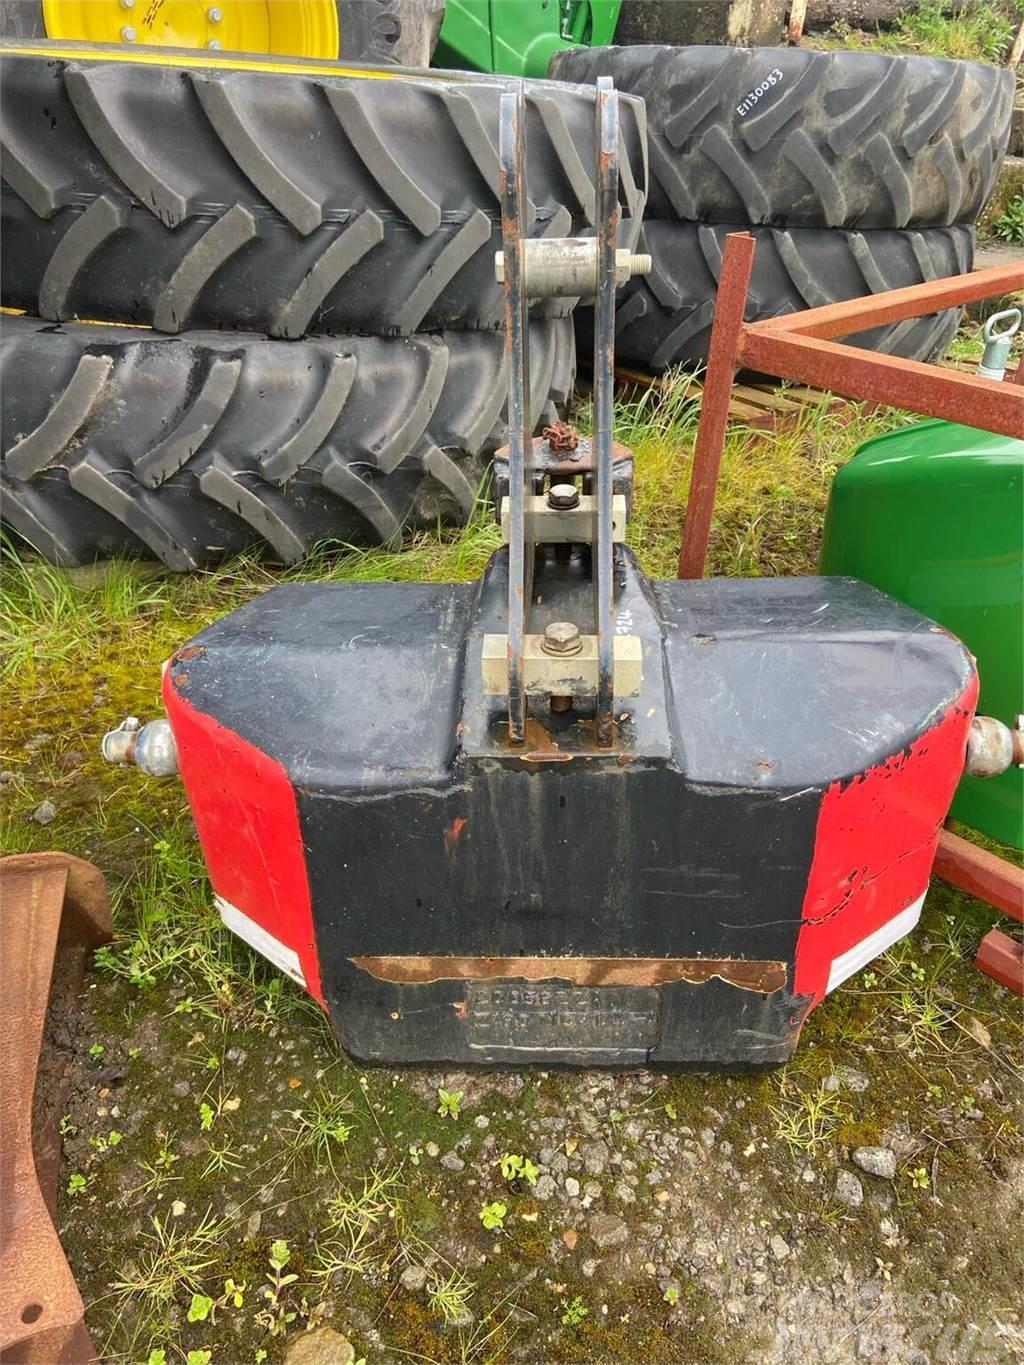 Zuidberg 900KG Weight Sonstiges Traktorzubehör